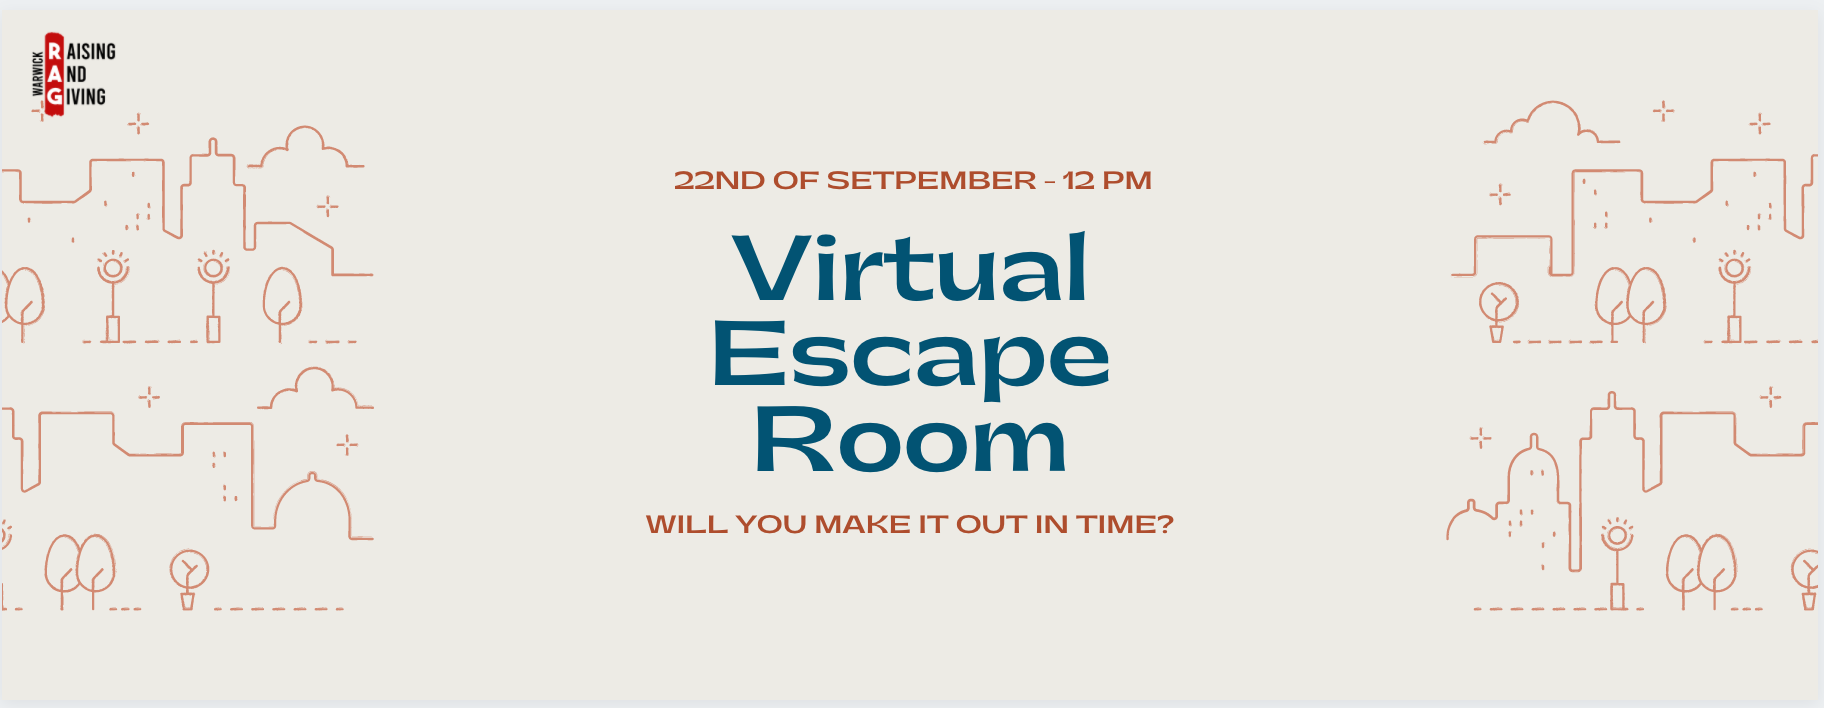 Online Escape Room Singapore